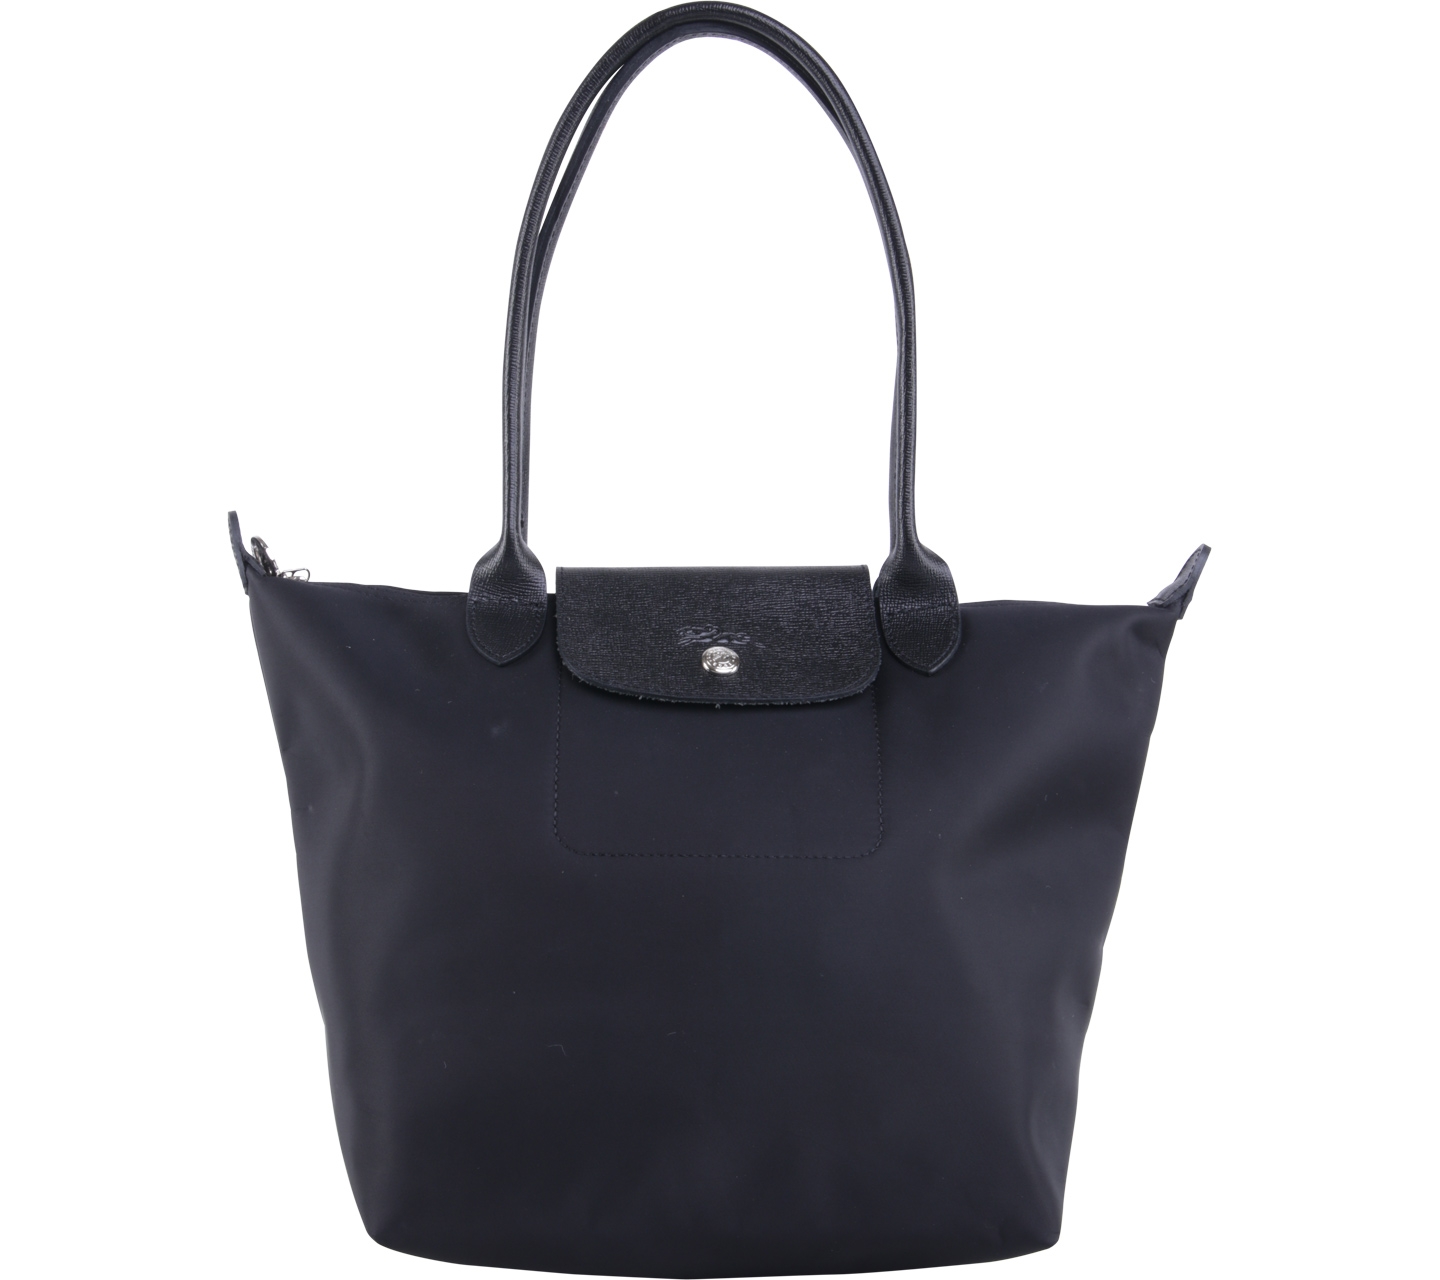 Longchamp Black Tote Bag